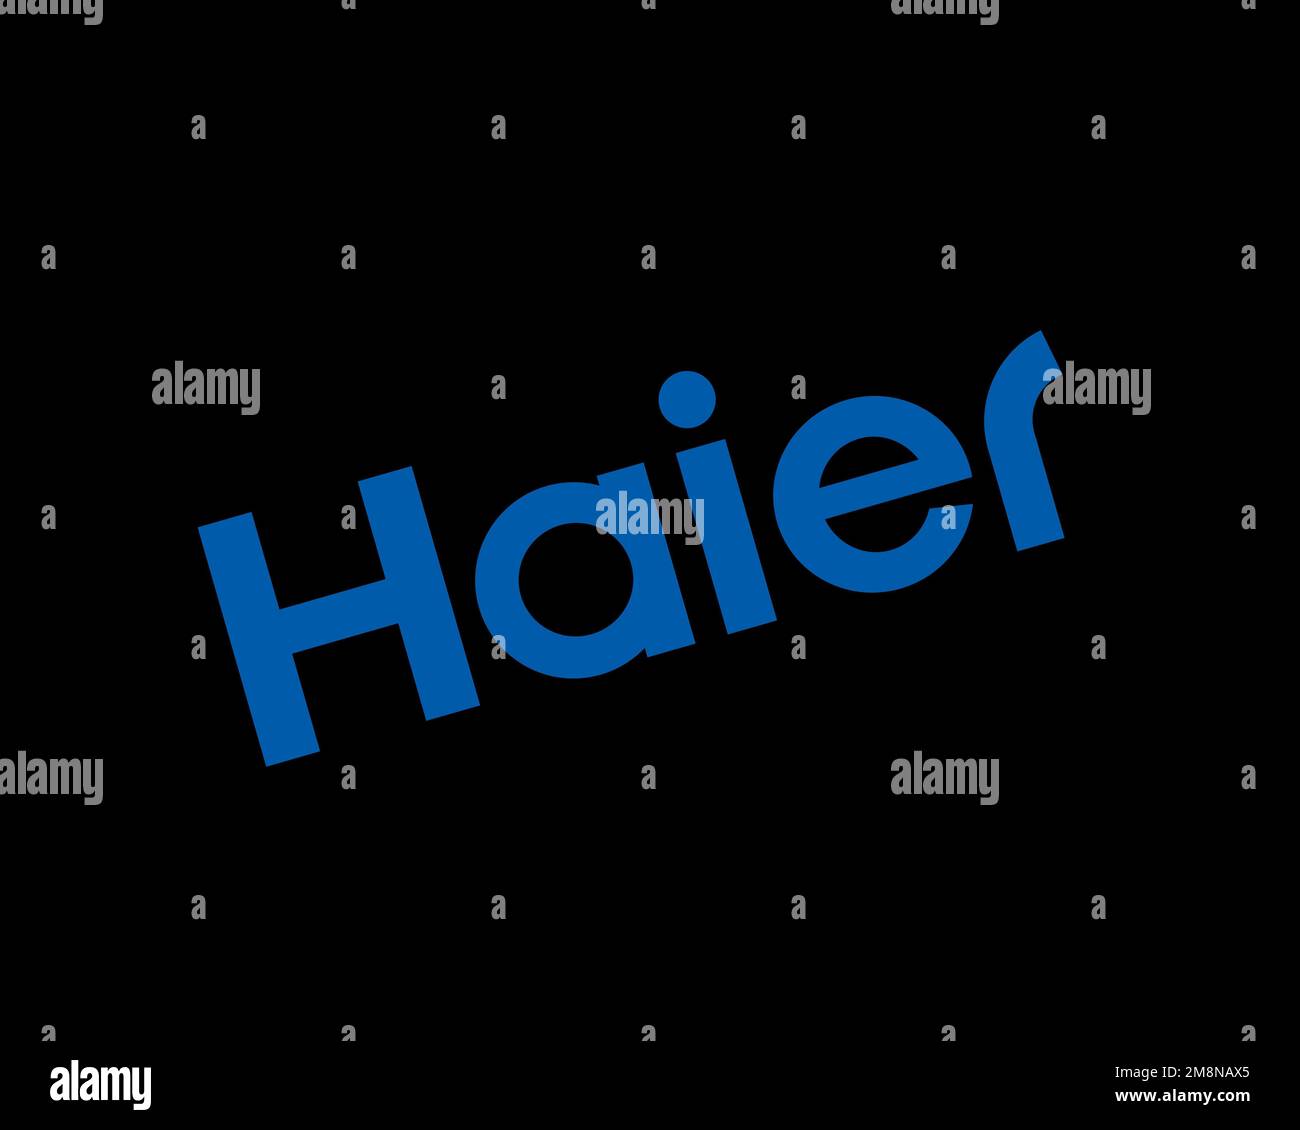 Haier HD wallpapers | Pxfuel